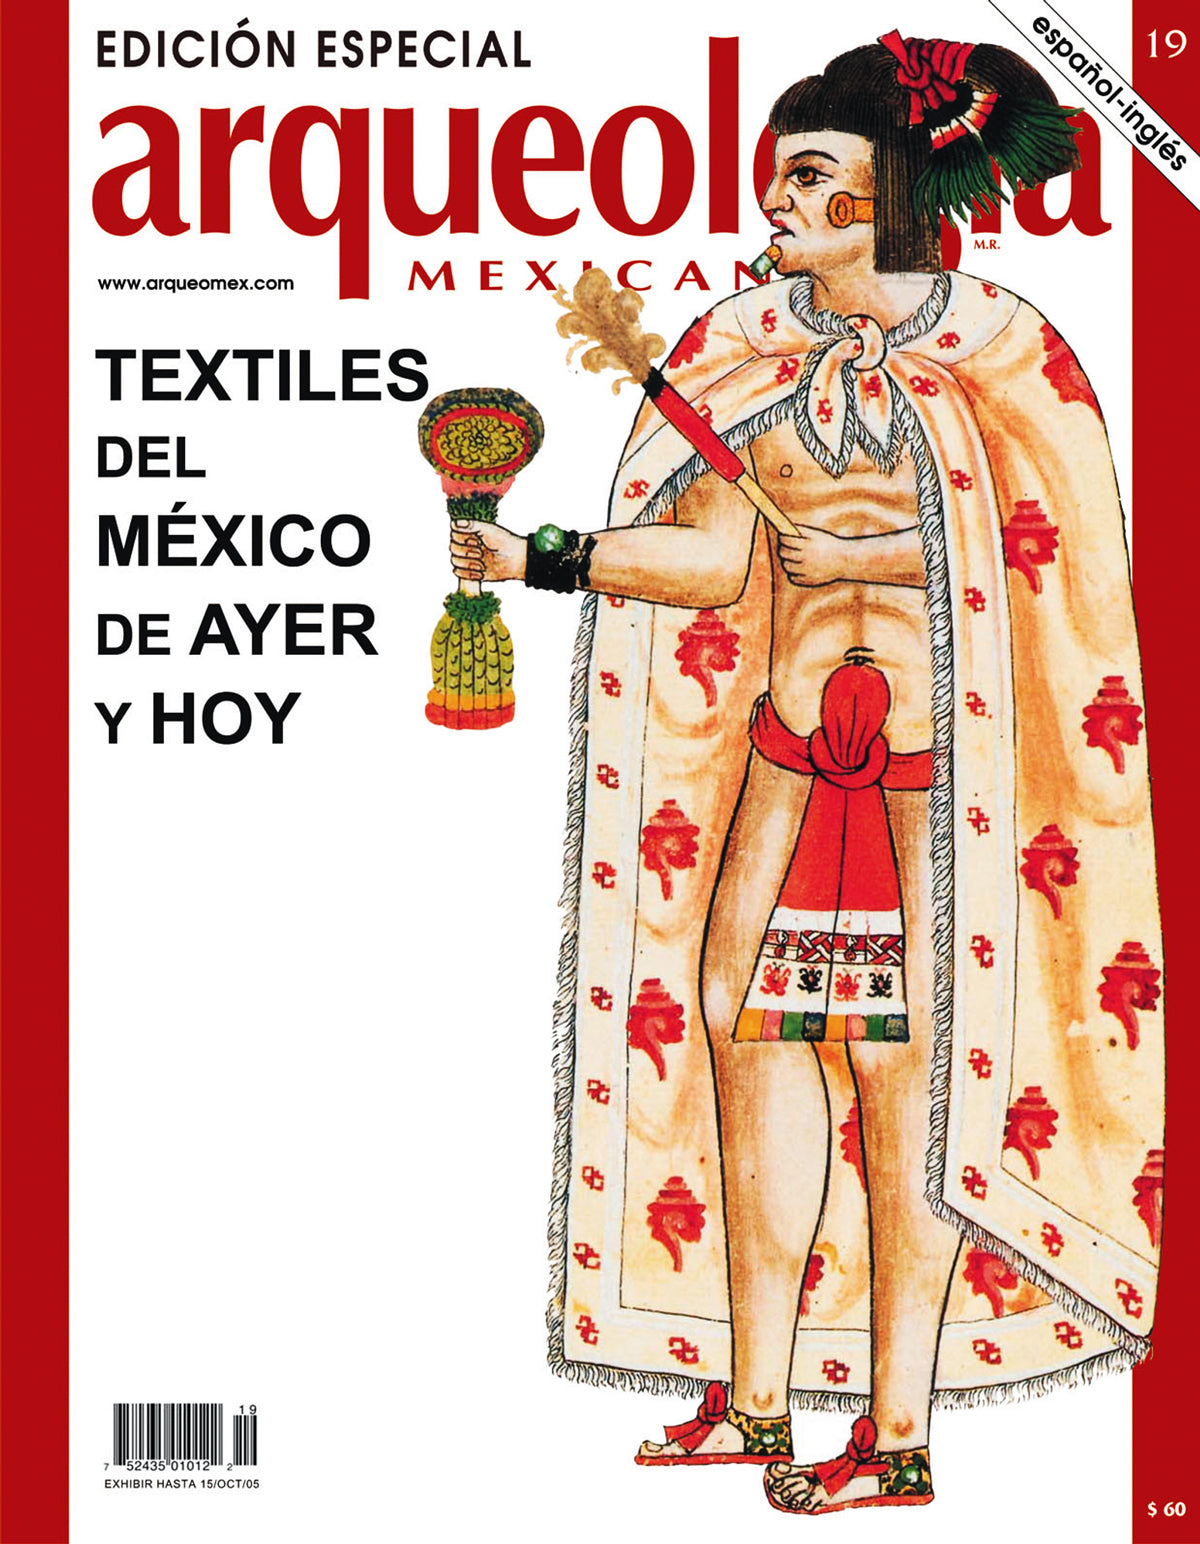 Textiles del México de ayer y hoy